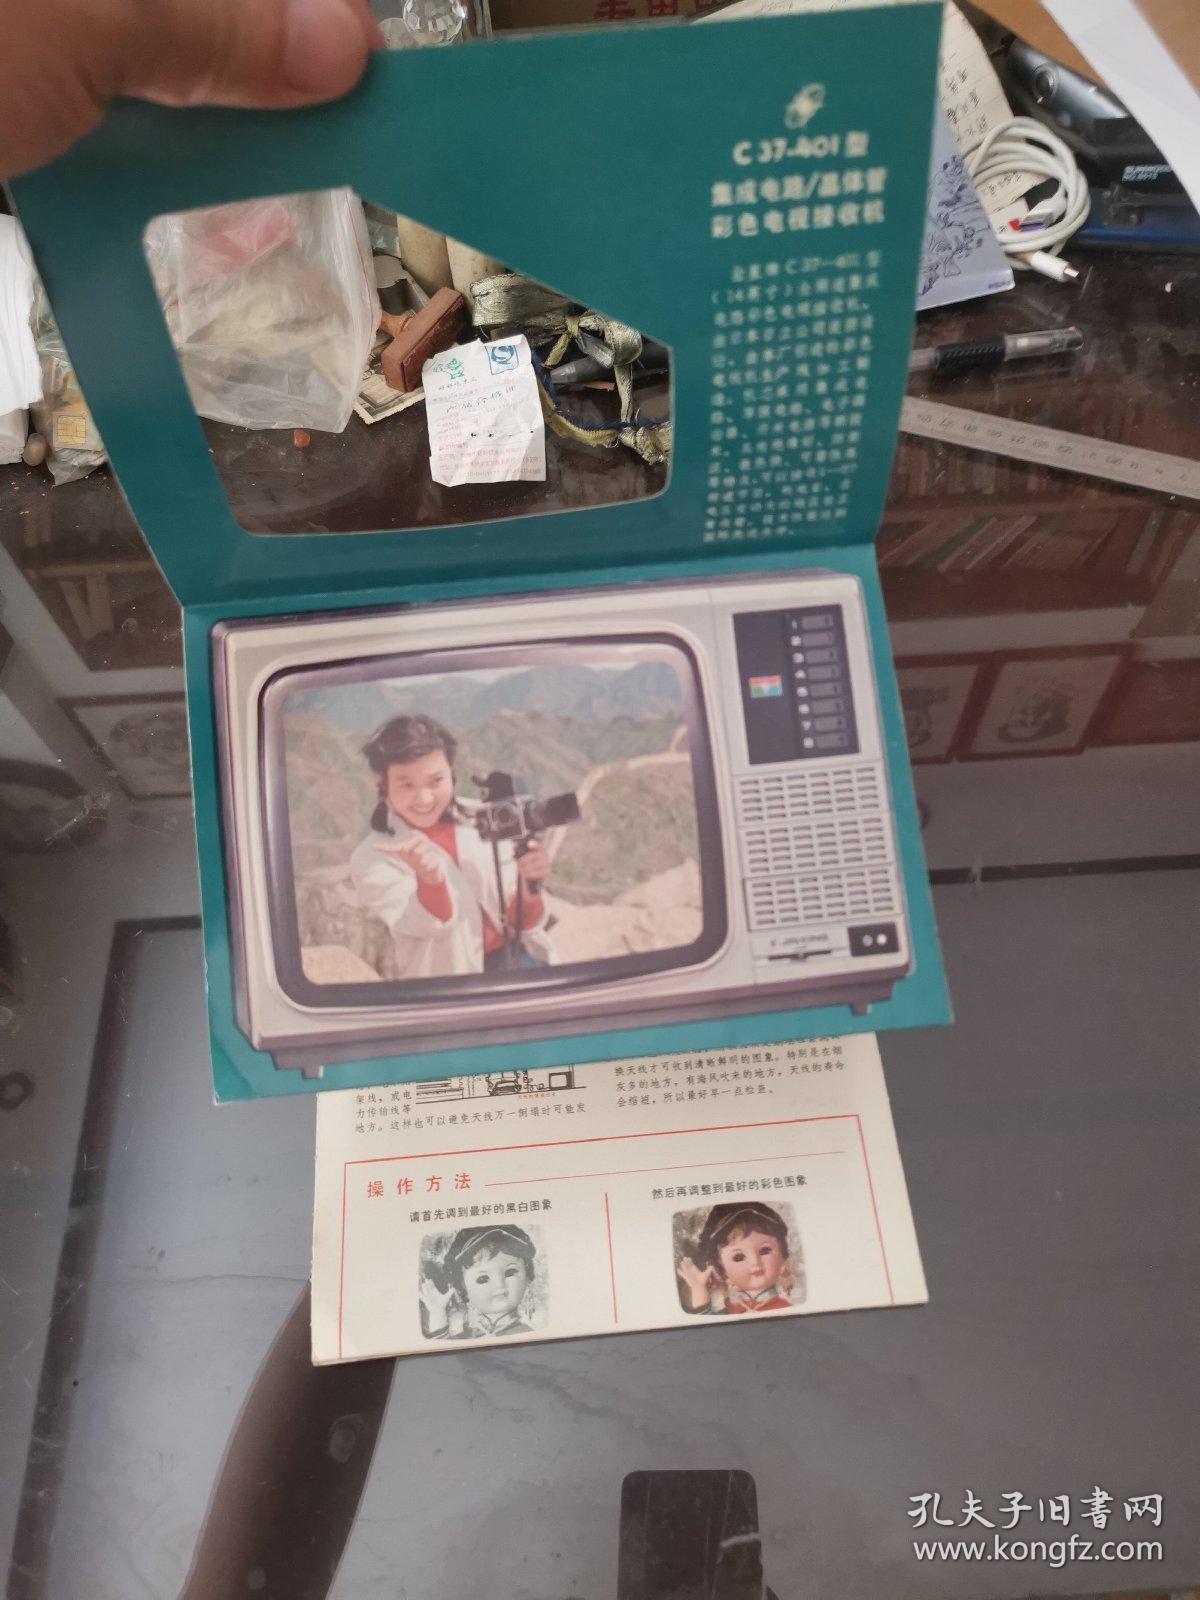 金星C37-401型彩色电视接收机说明书